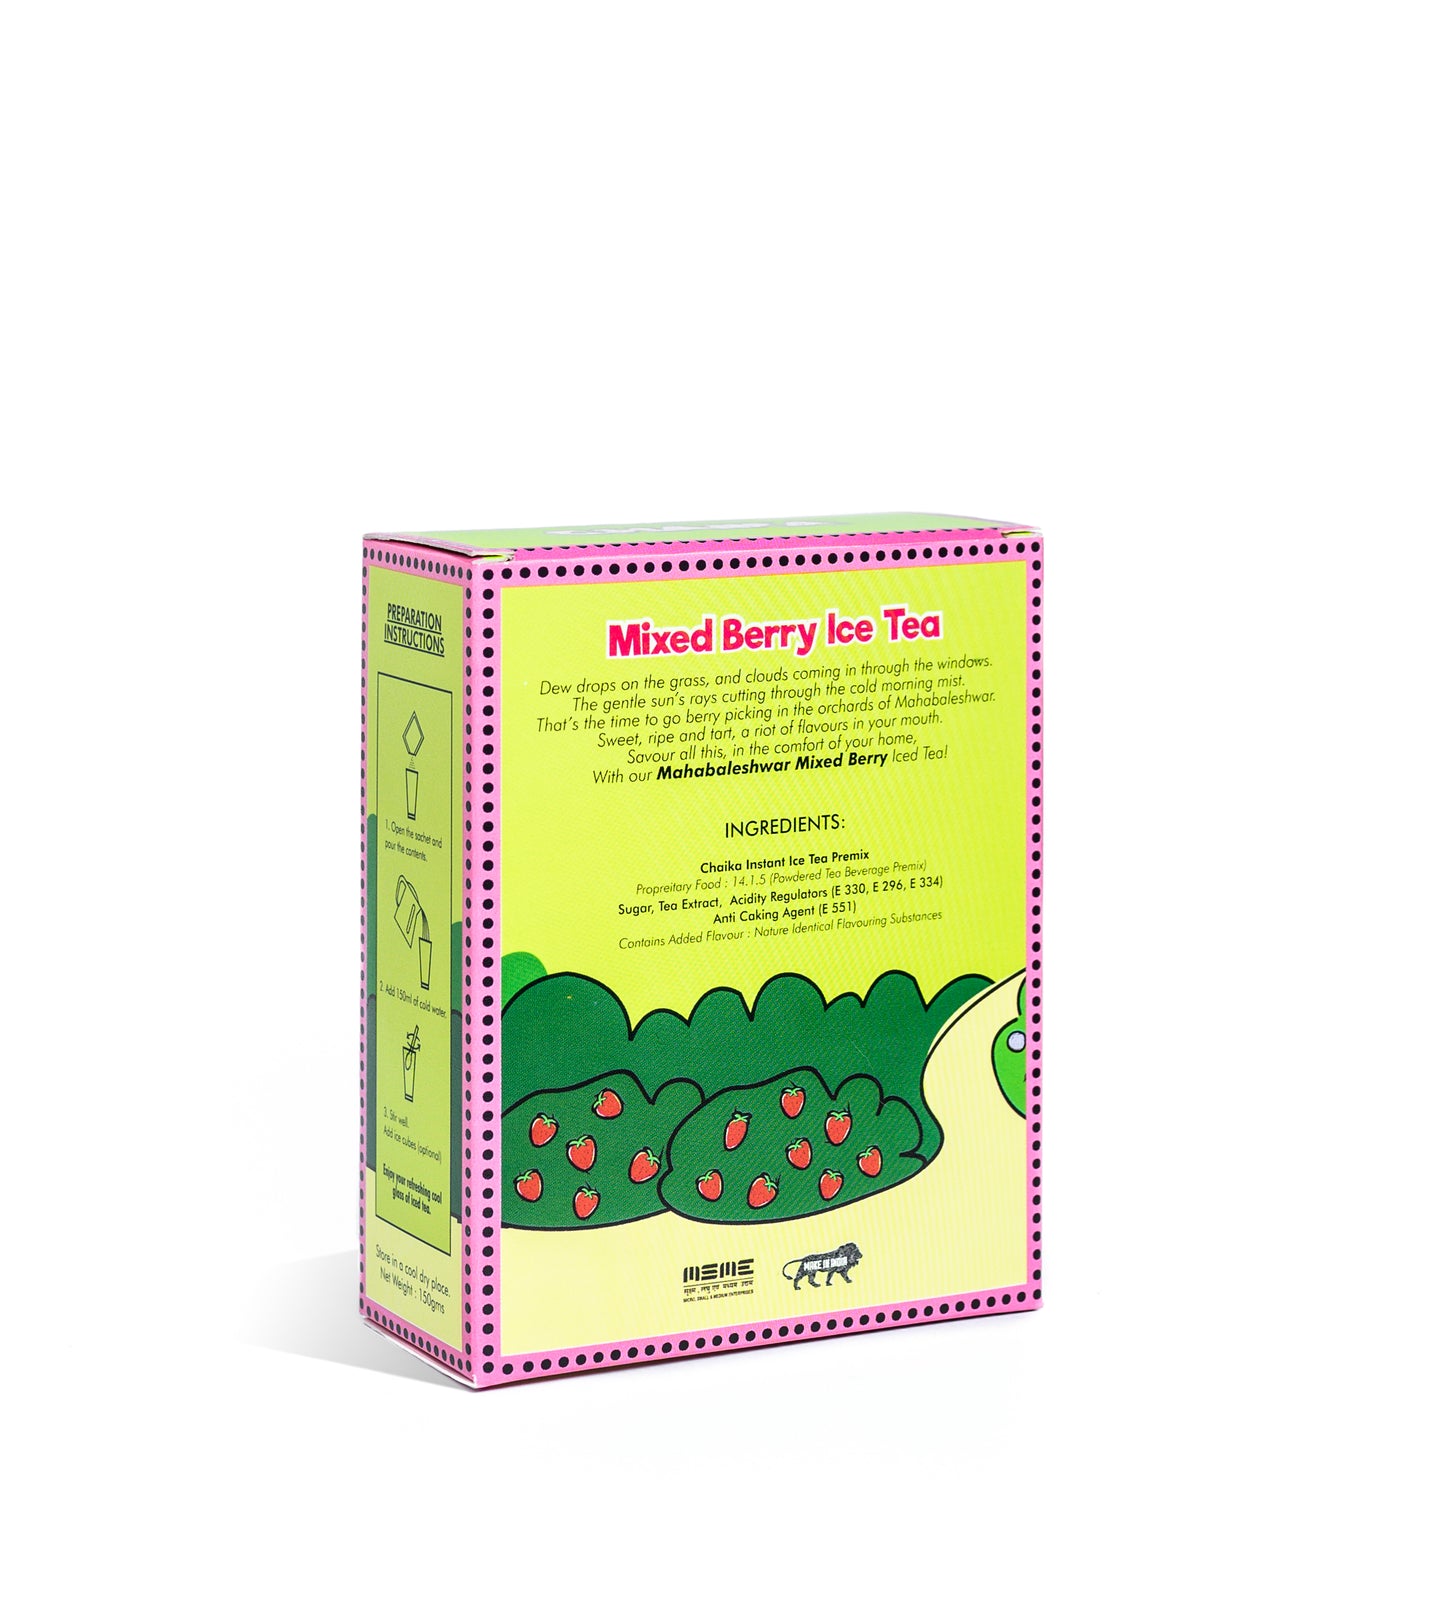 Instant Iced Tea: Mahabaleshwar Mixed Berry